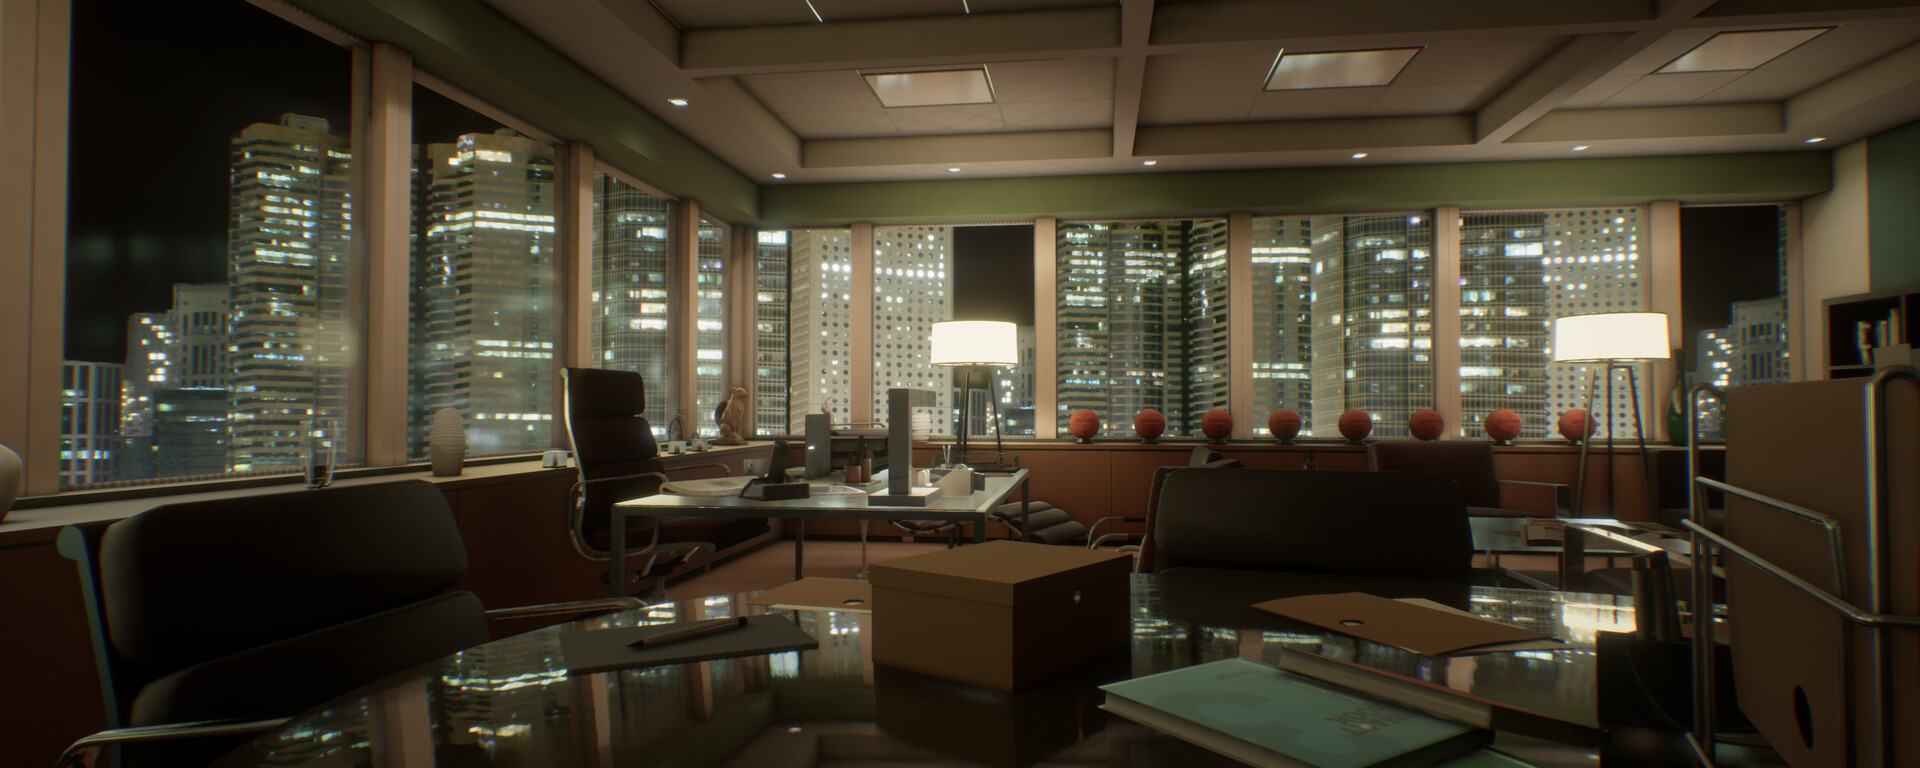 ArtStation - Harvey Specter's Office from the show 